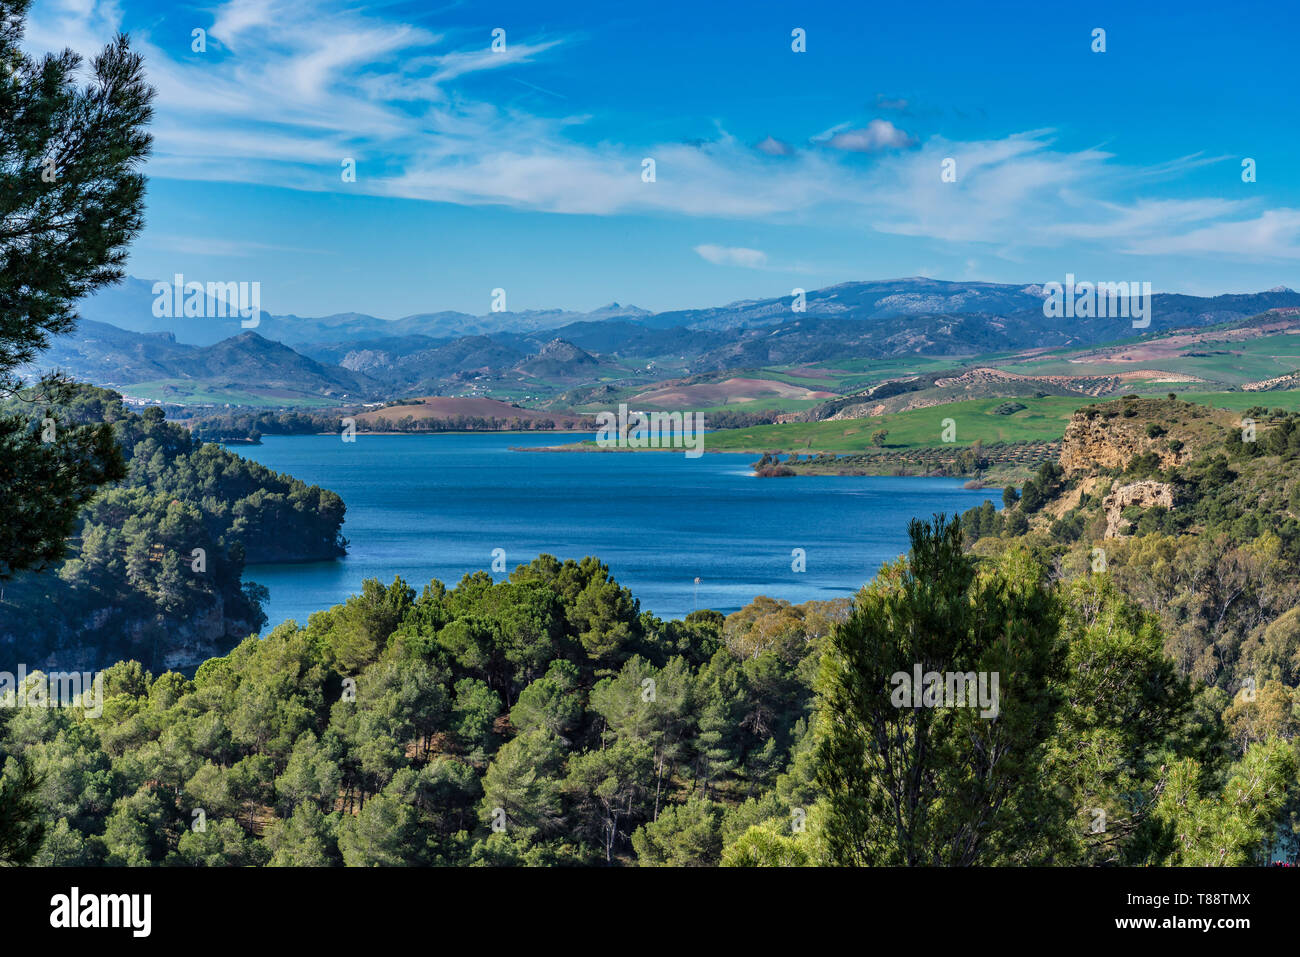 Schöne Sicht auf den See Embalse del Guadalhorce, Ardales Behälter in der Provinz Malaga, Andalusien, Spanien Stockfoto